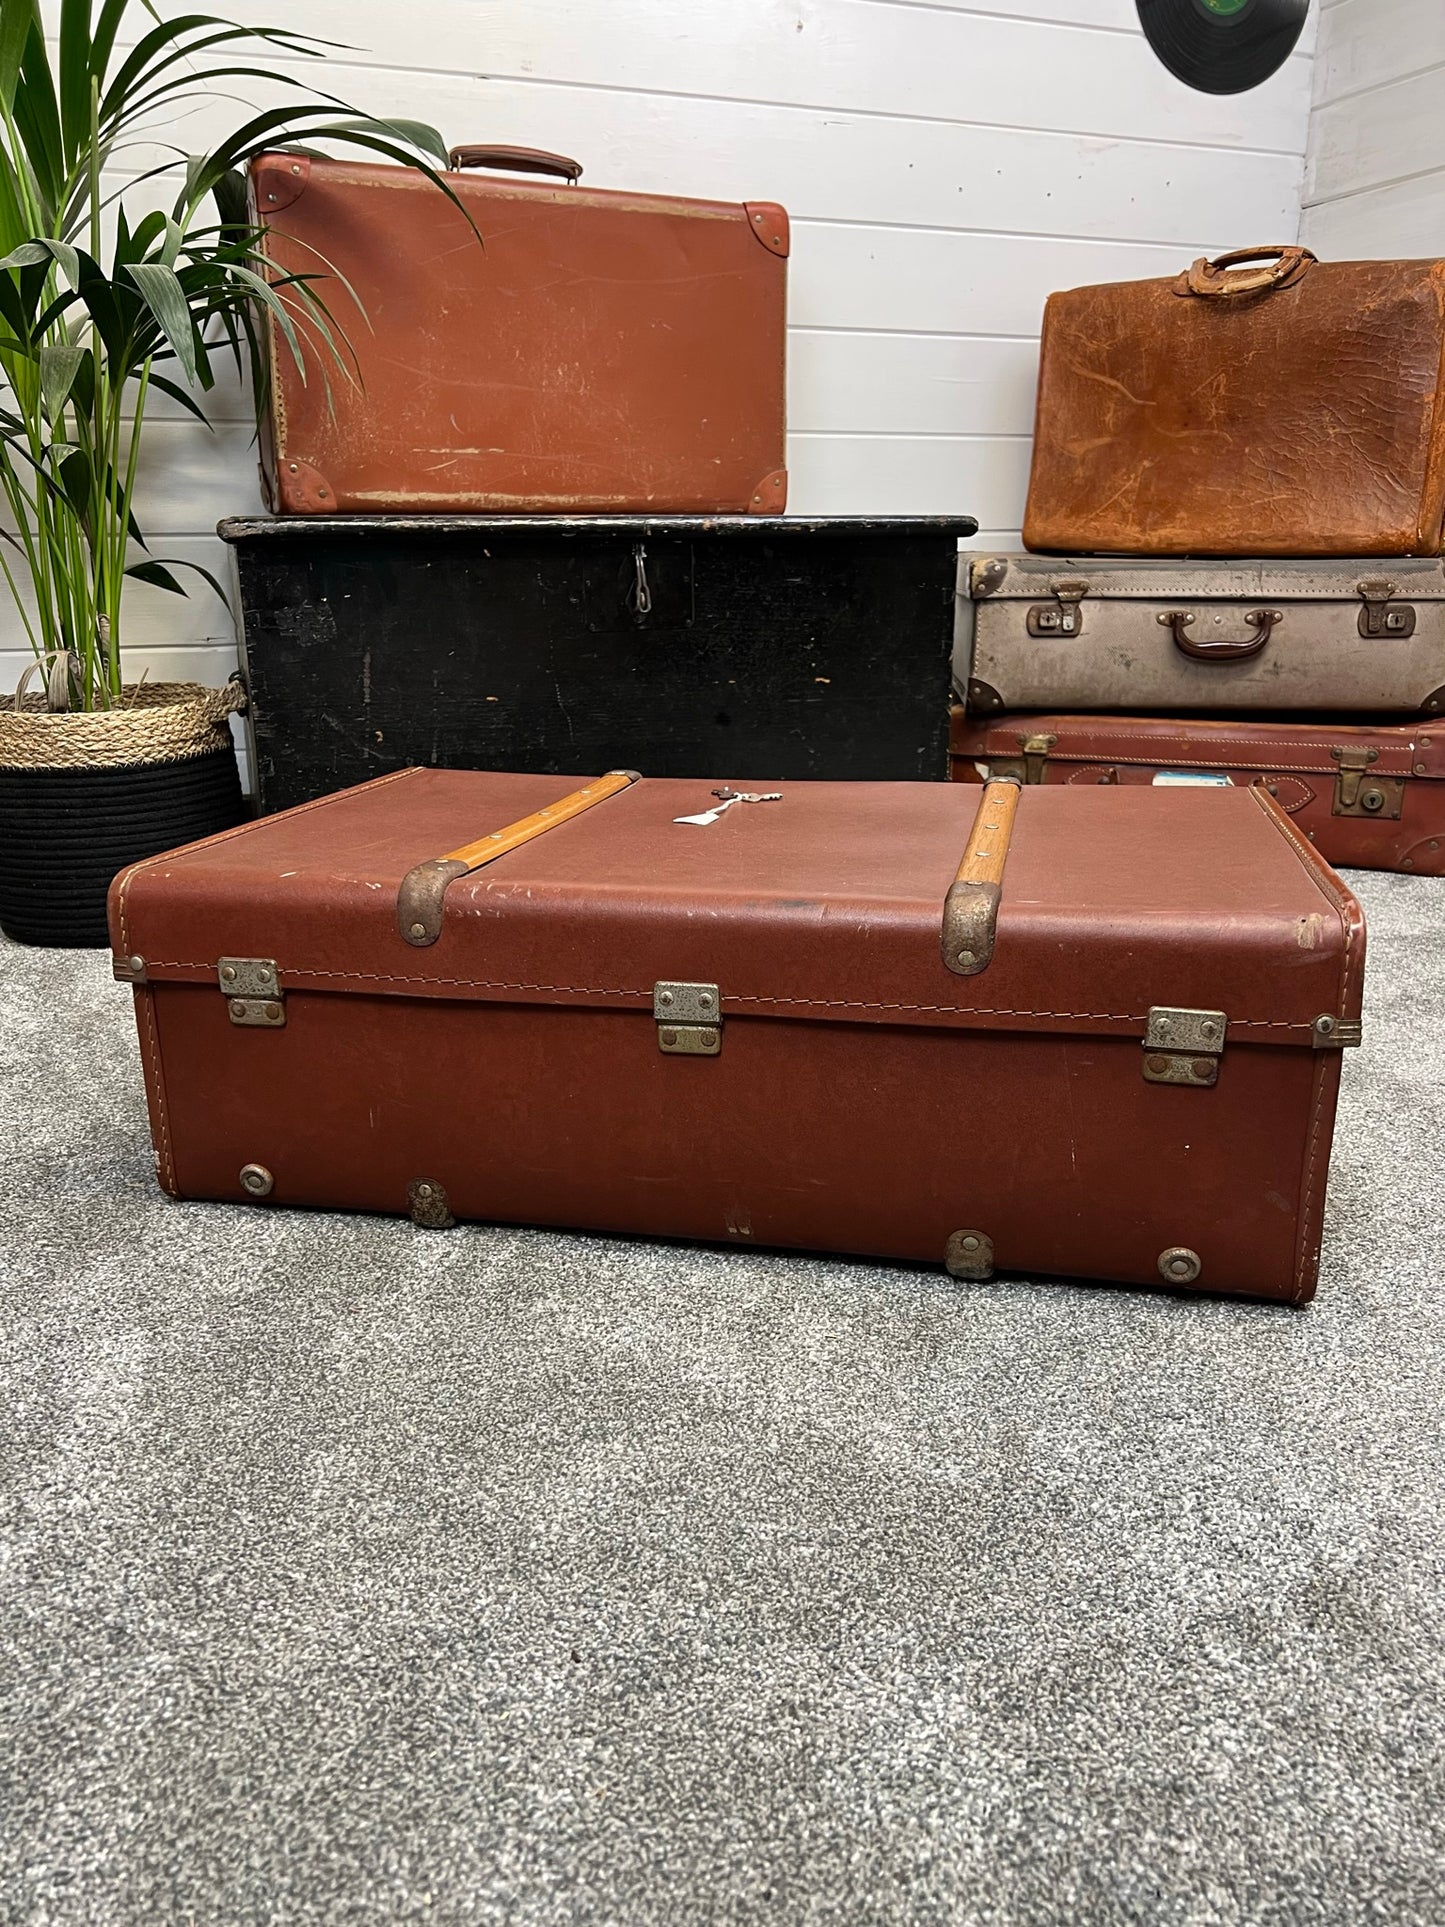 Vintage Battenbound Motor Luggage Suitcase Trunk Vintage Car Case With 2x Keys